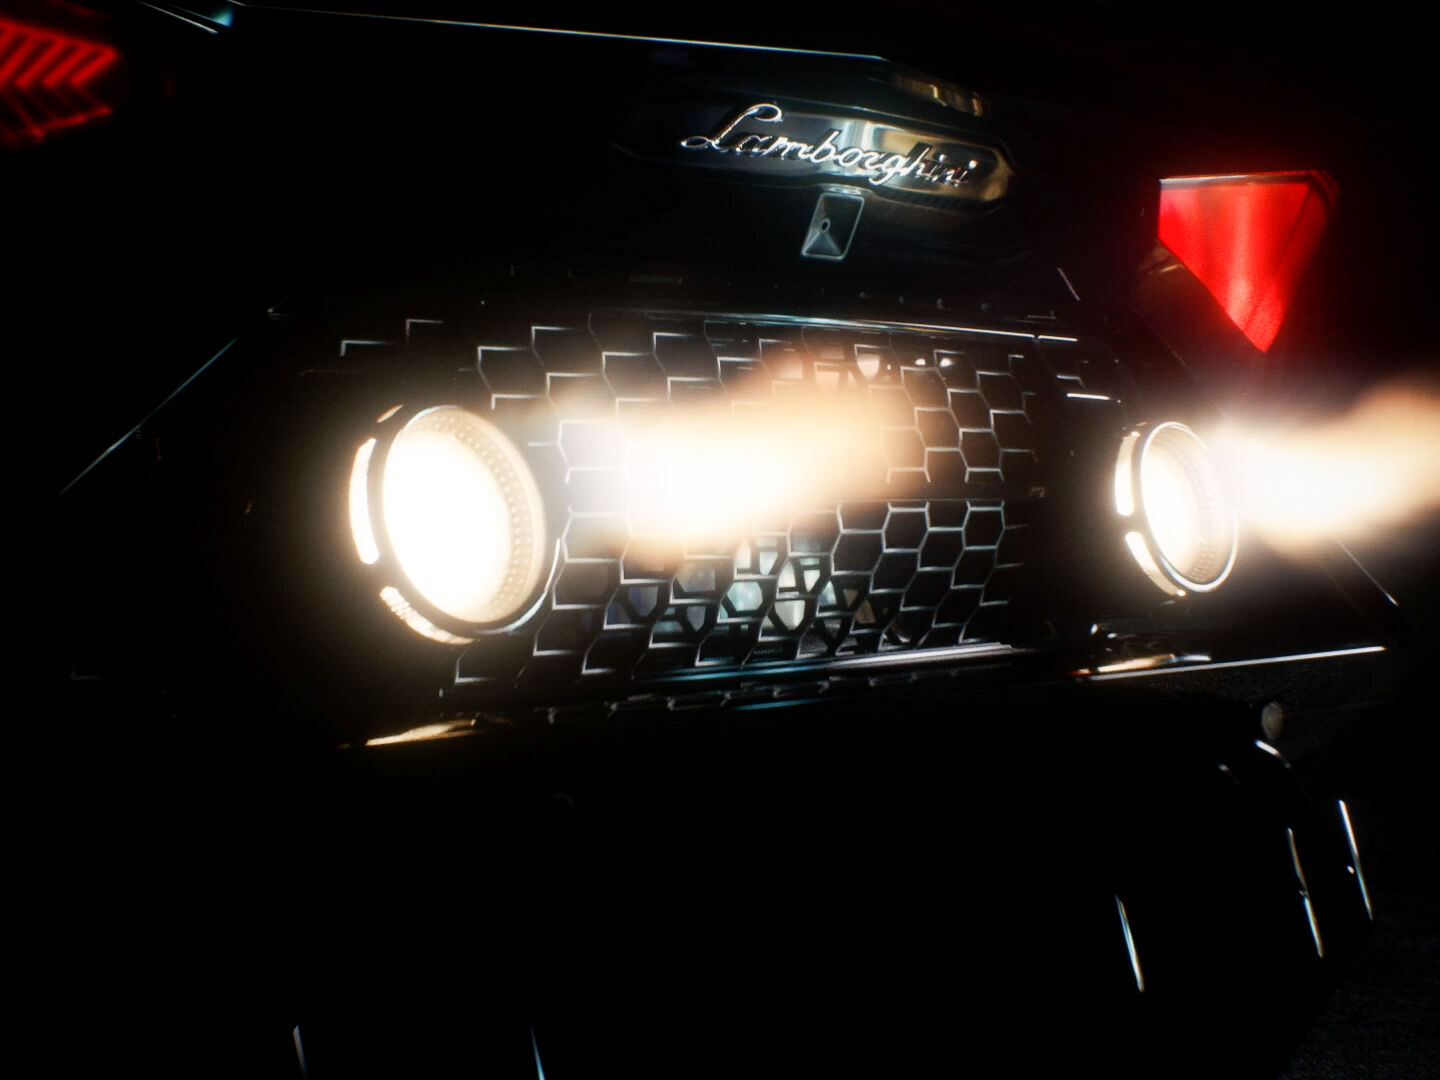 Ексклузивното Lamborghini Aventador LP 780-4 Ultimae Coupé кое ќе биде поврзано со NFT 1.1 и на аукција на 19 април 2022 година, скриншот од видео трејлерот